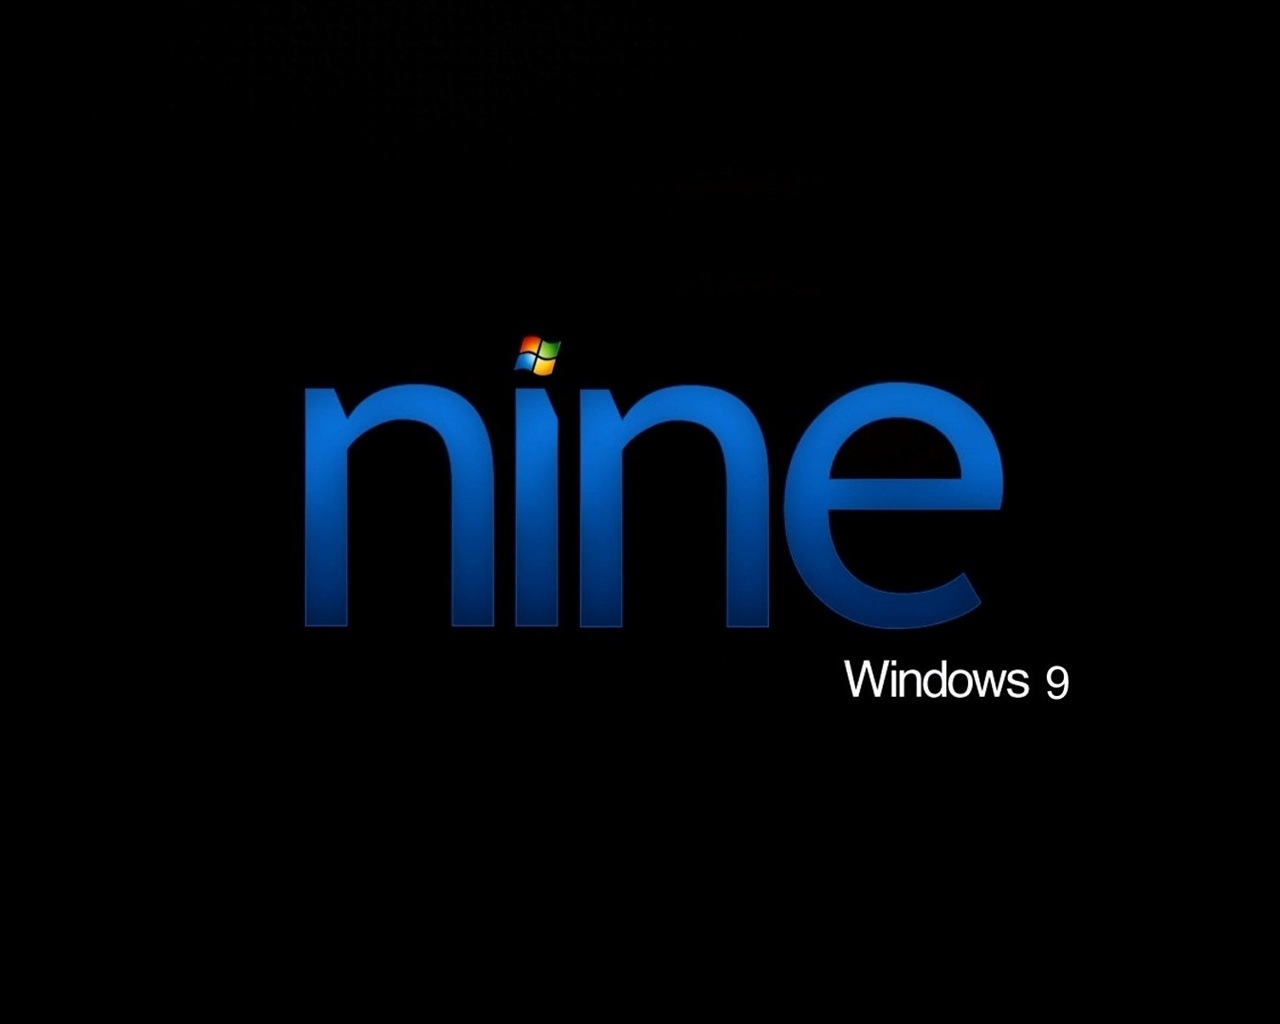 Microsoft Windowsの9システムテーマのHD壁紙 #18 - 1280x1024